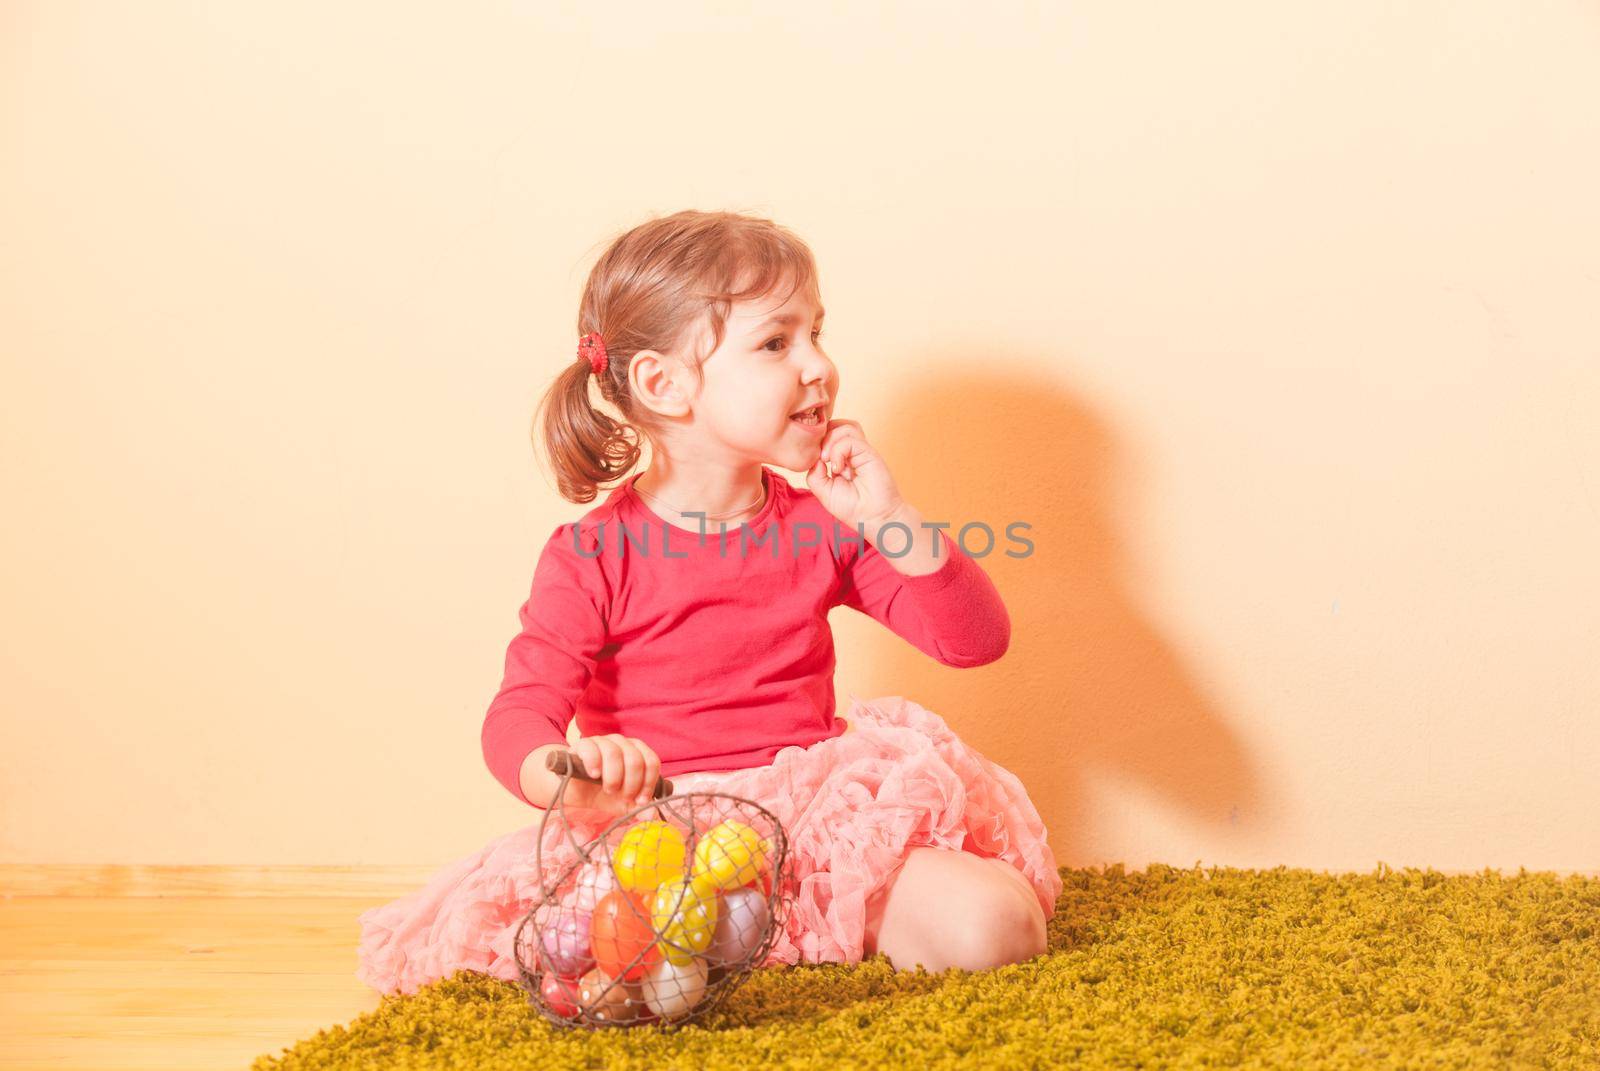 Girl on an Easter Egg hunt by oksix